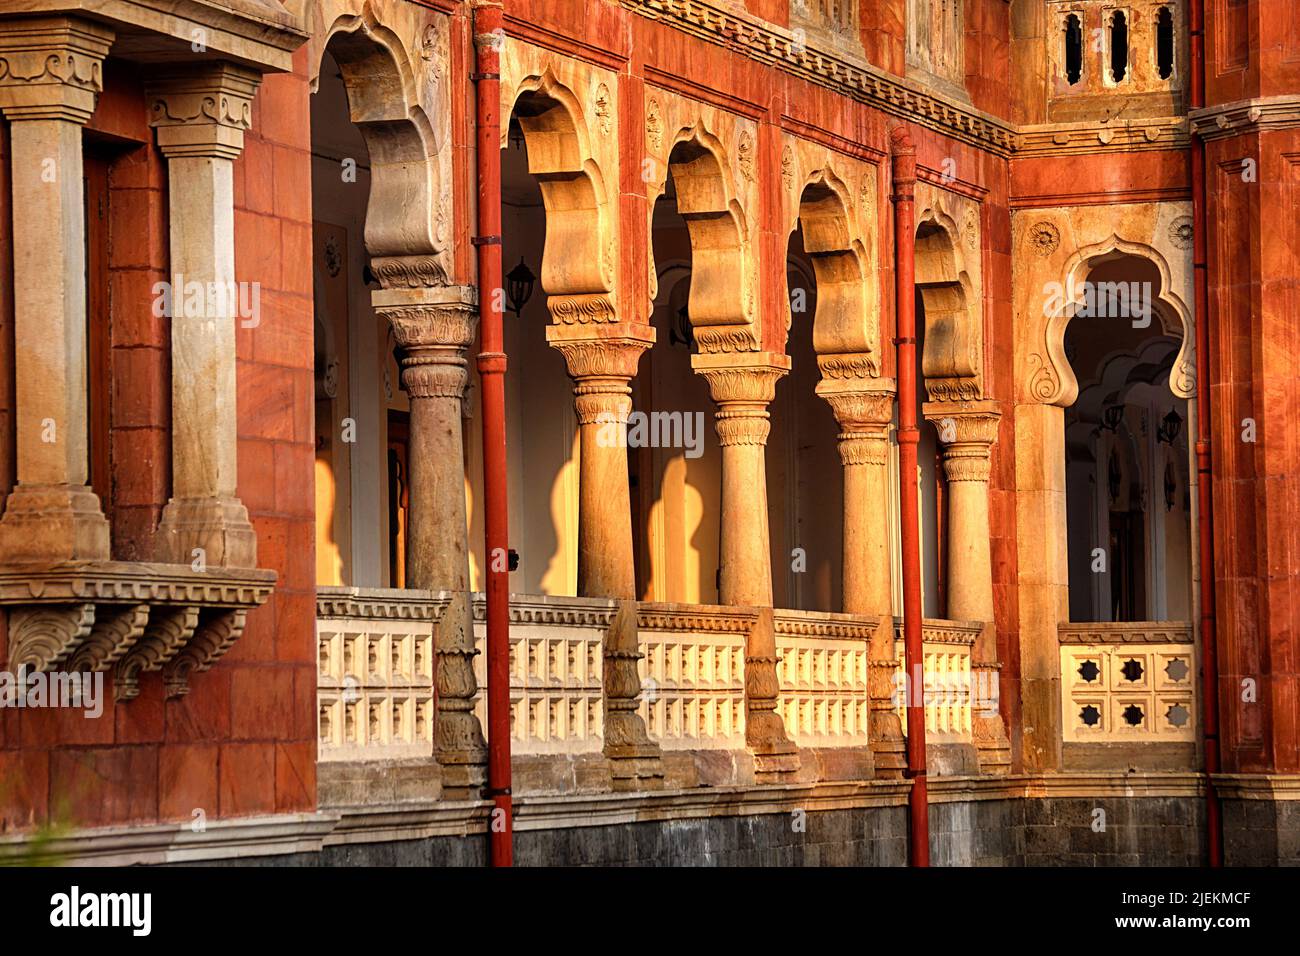 Bögen und Säulen der Mahatma Gandhi Hall. Ghanta Ghar, Indore, Madhya Pradesh. Auch bekannt als King Edward Hall. Indische Architektur. Stockfoto